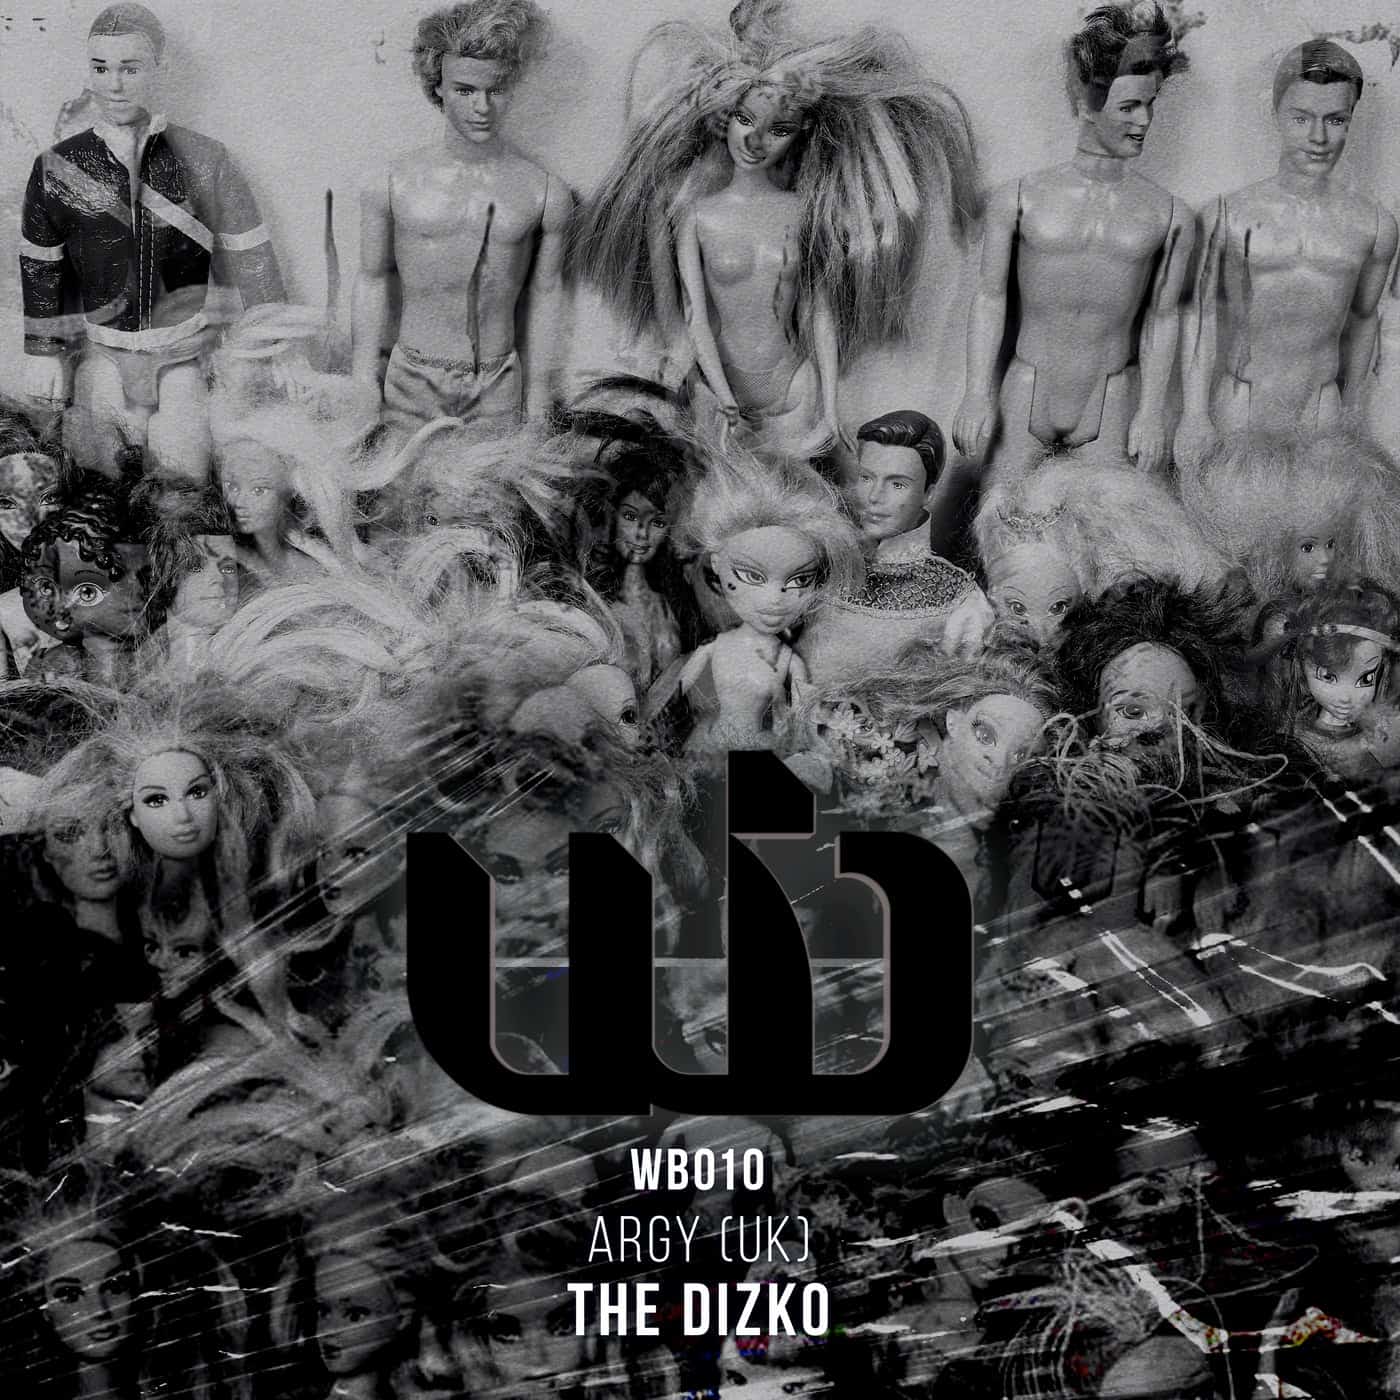 Download Argy (UK) - The Dizko [WB010] on Electrobuzz